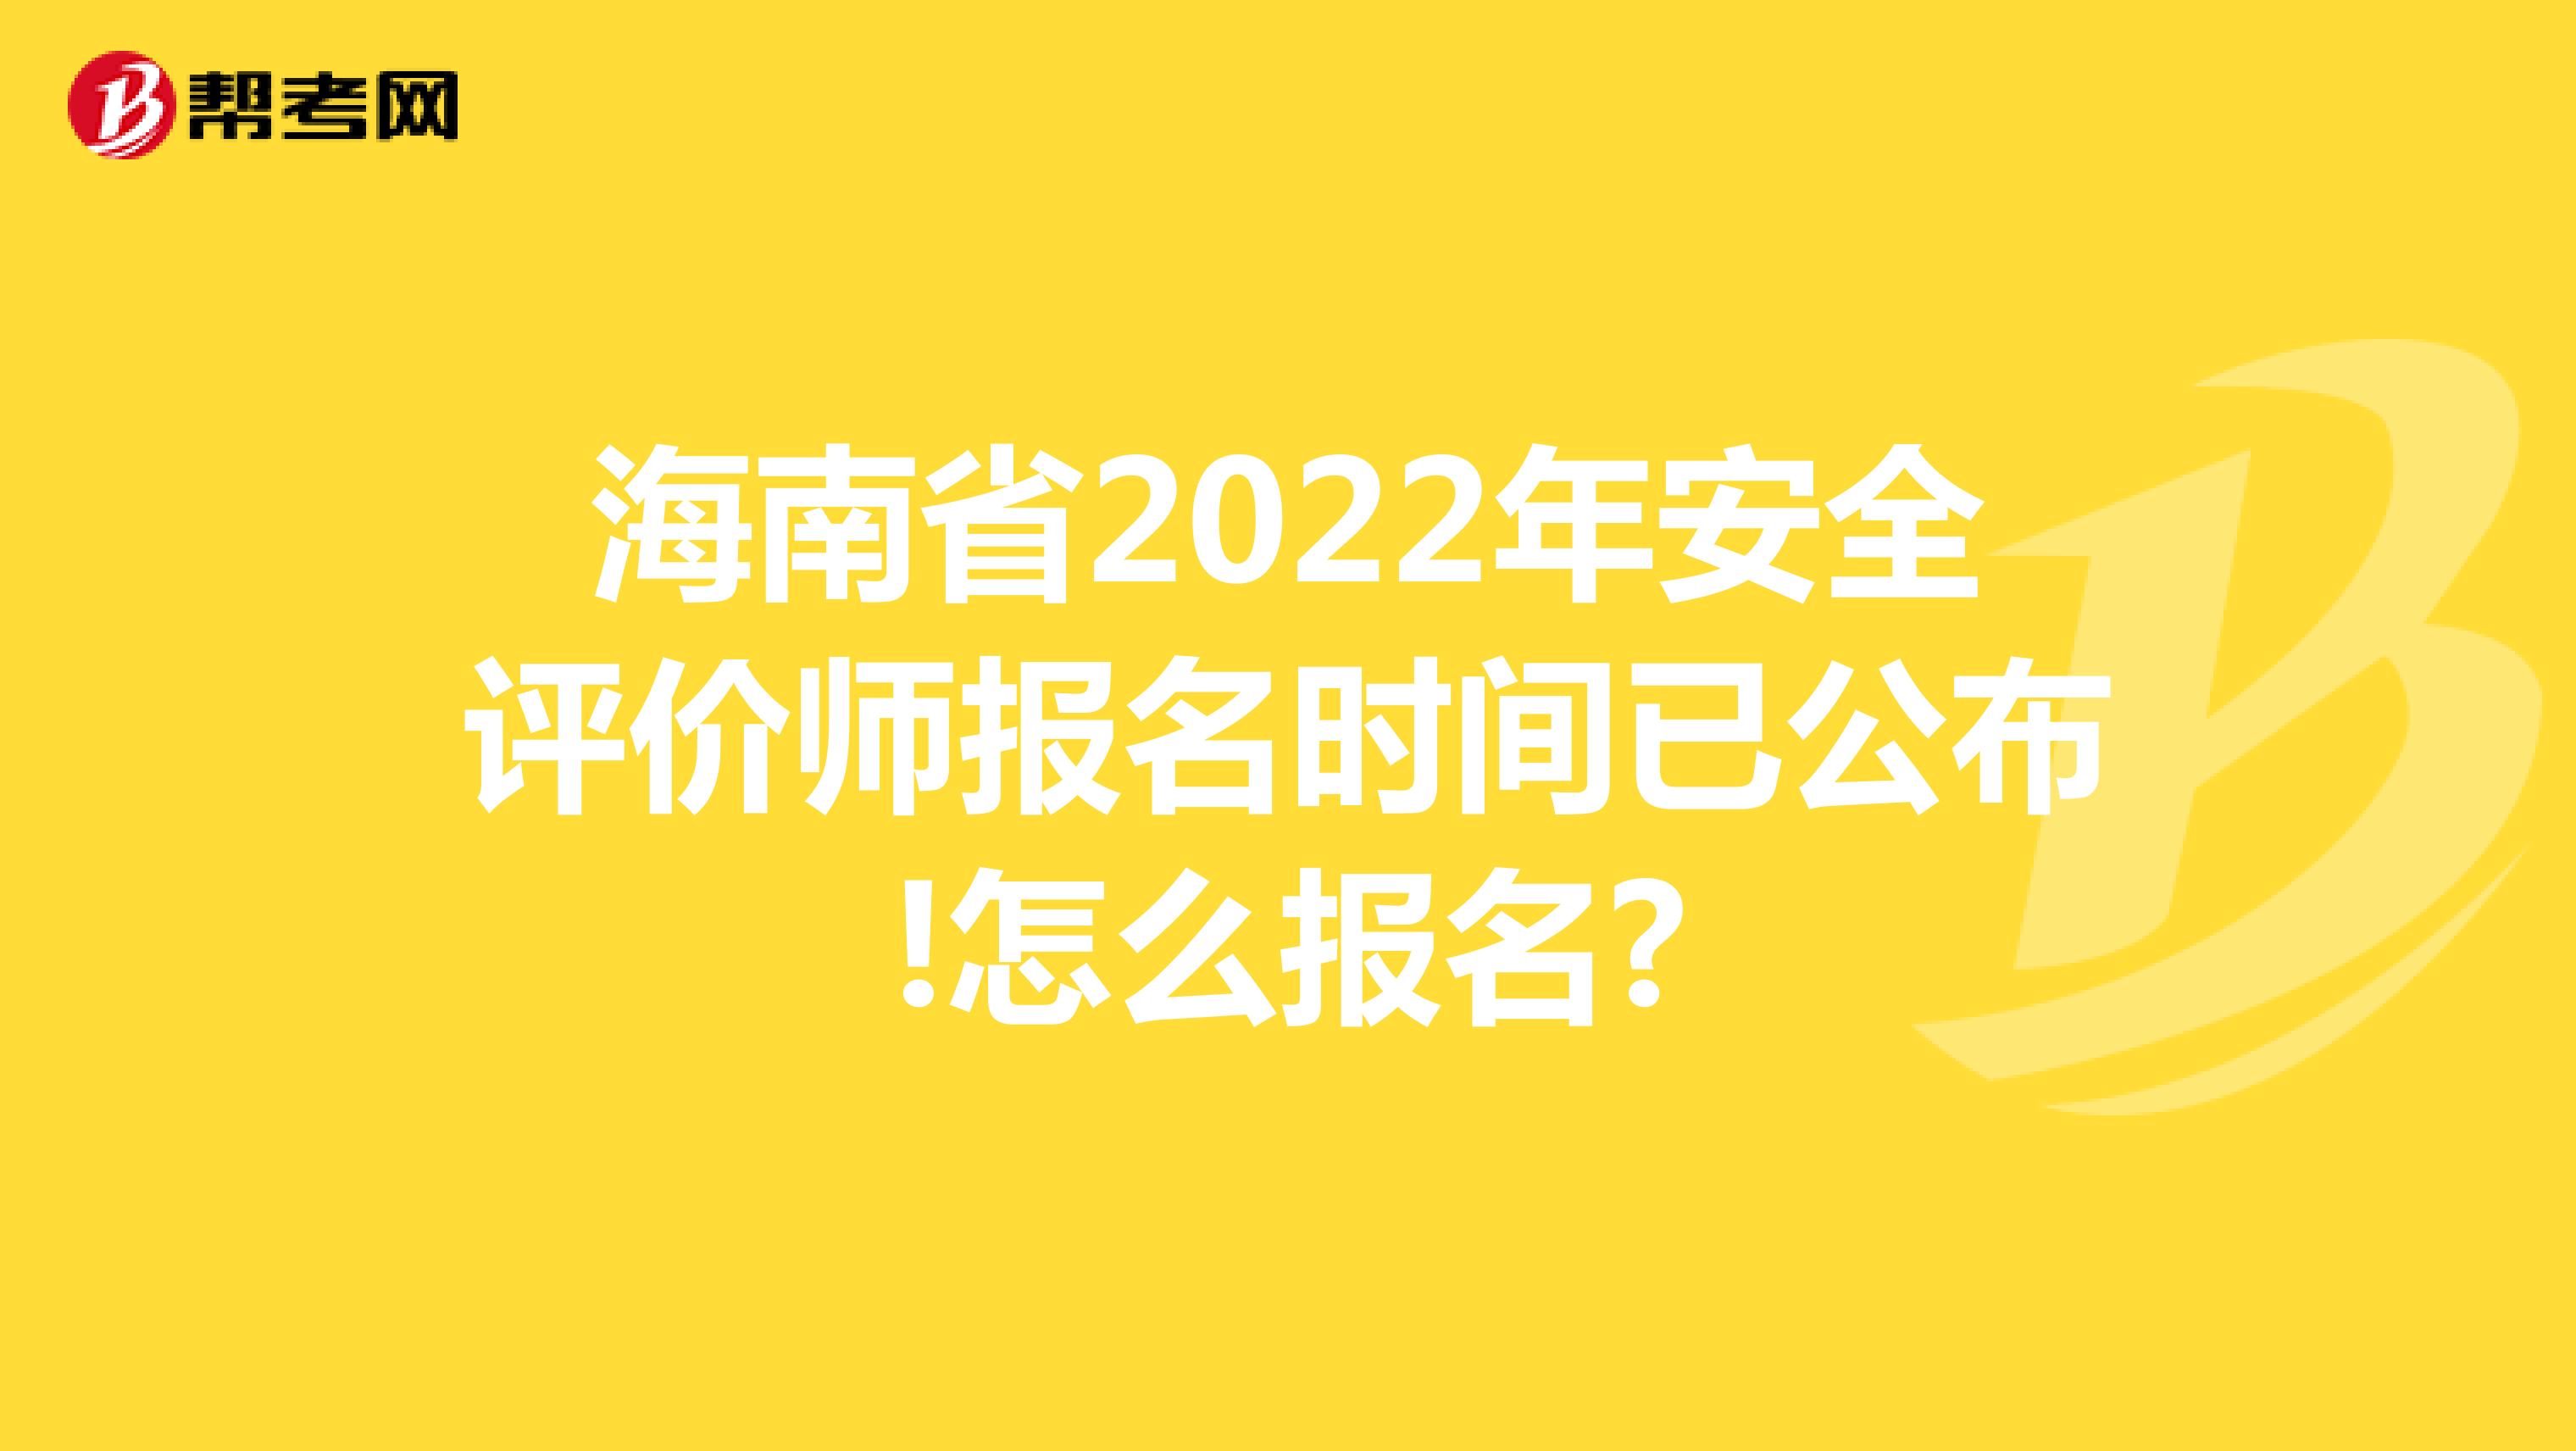 海南省2022年安全评价师报名时间已公布!怎么报名?